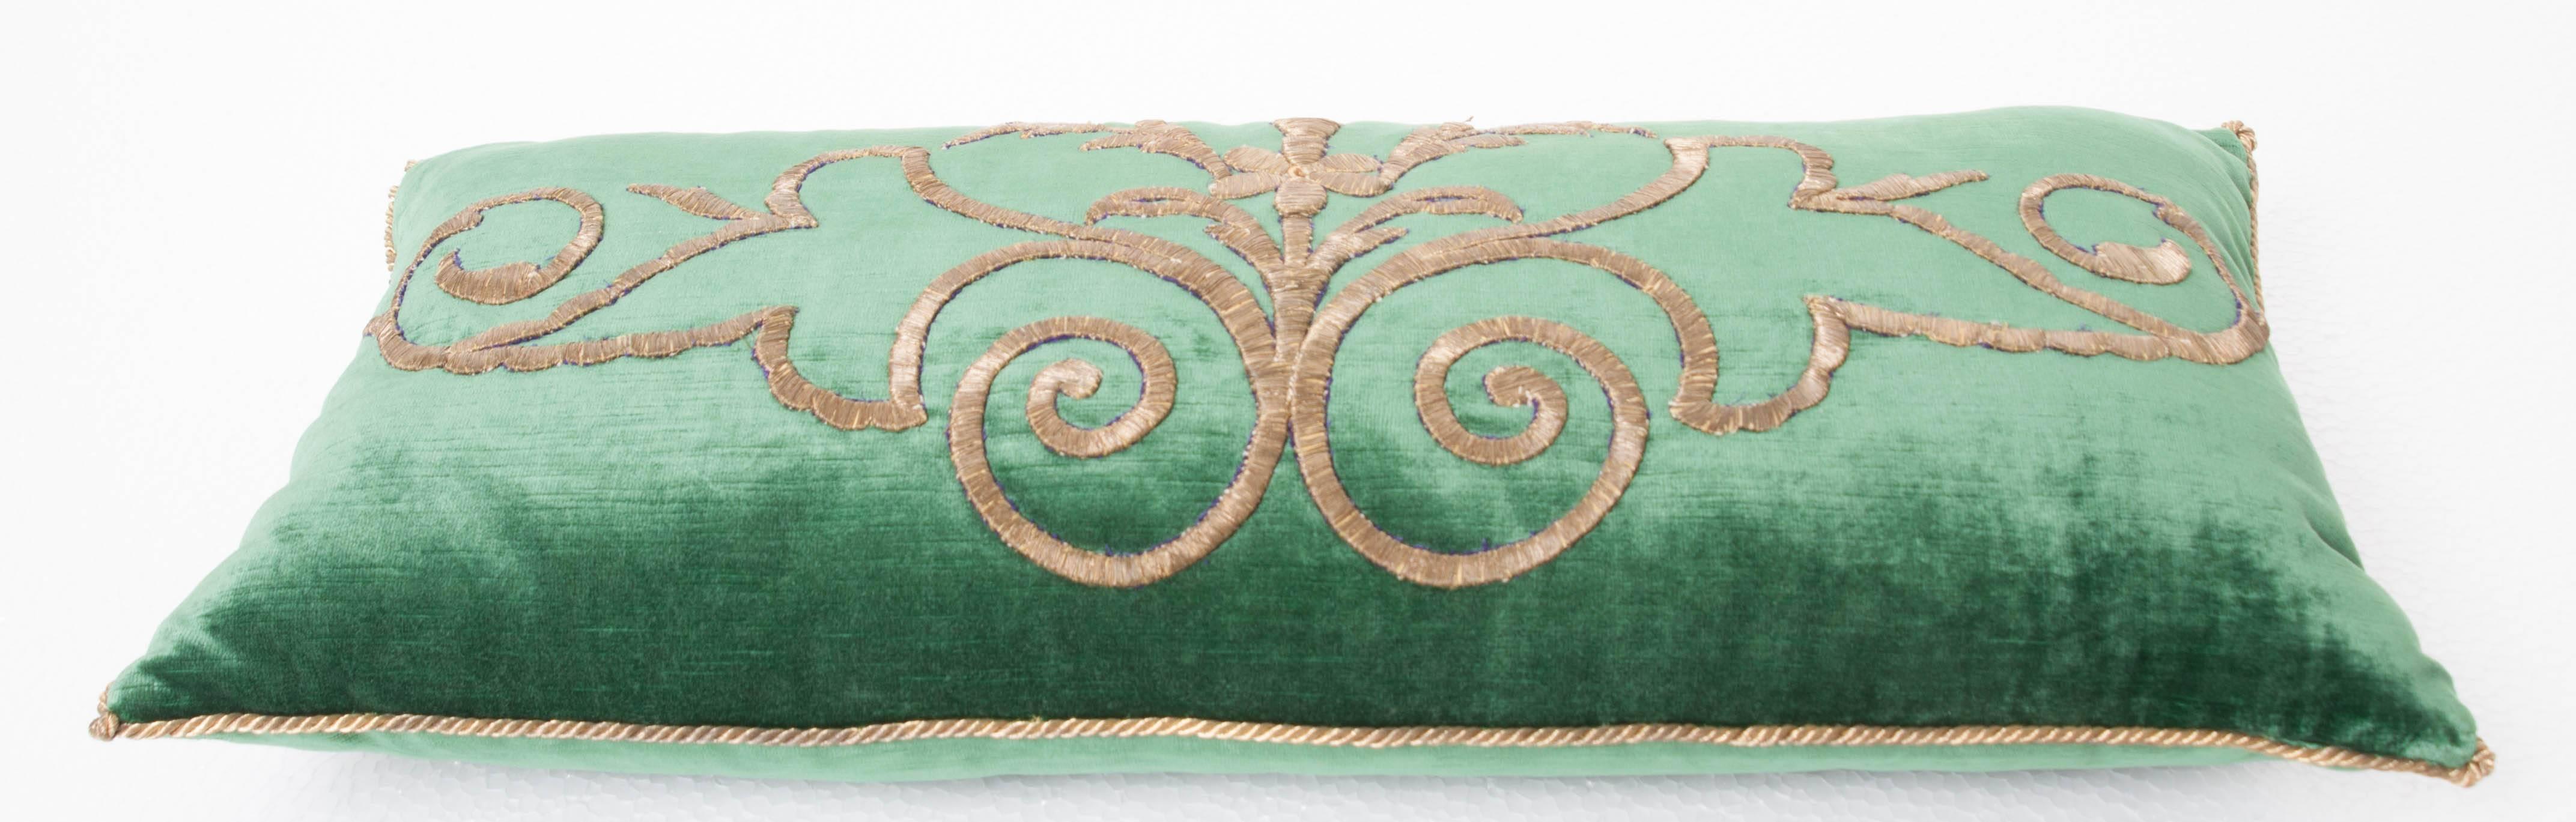 19th Century Antique Textile Pillow by B.Viz Designs